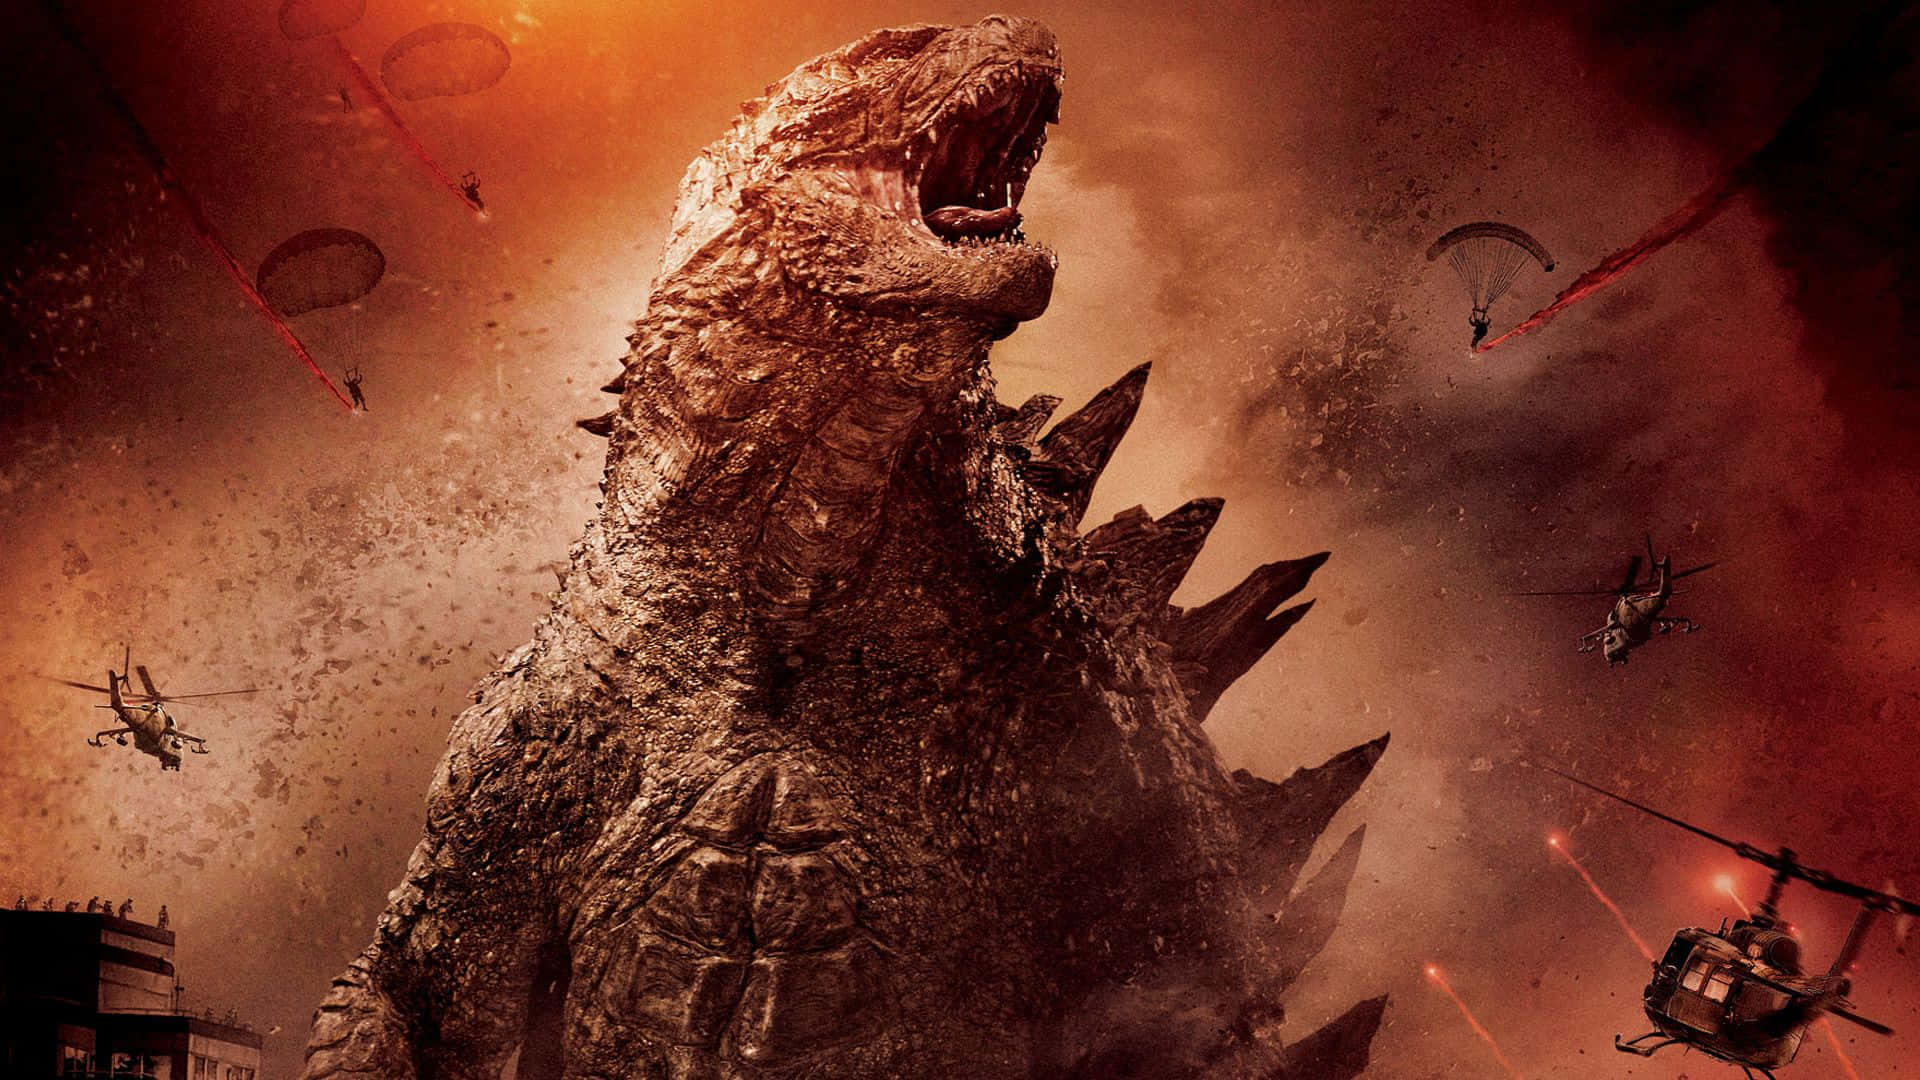 Cool Roaring Godzilla Wallpaper